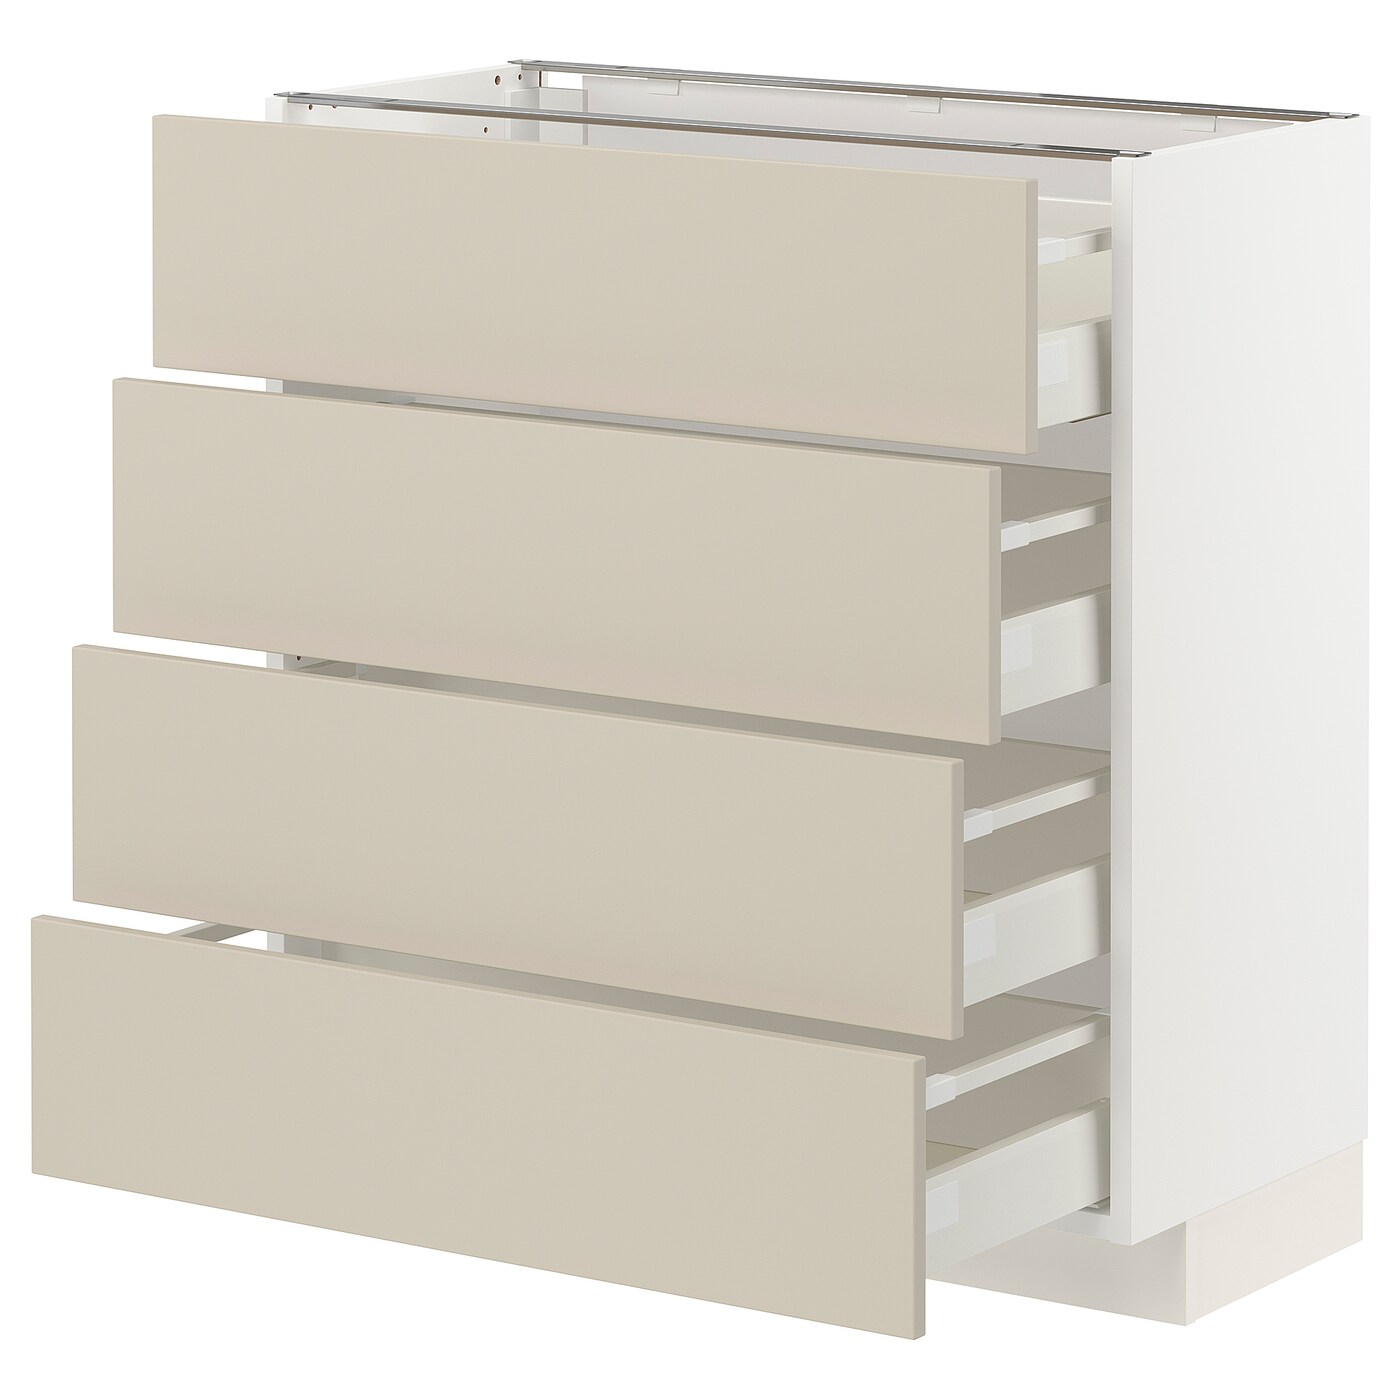 Напольный кухонный шкаф  - IKEA METOD MAXIMERA, 88x39,2x80см, белый/бежевый, МЕТОД МАКСИМЕРА ИКЕА